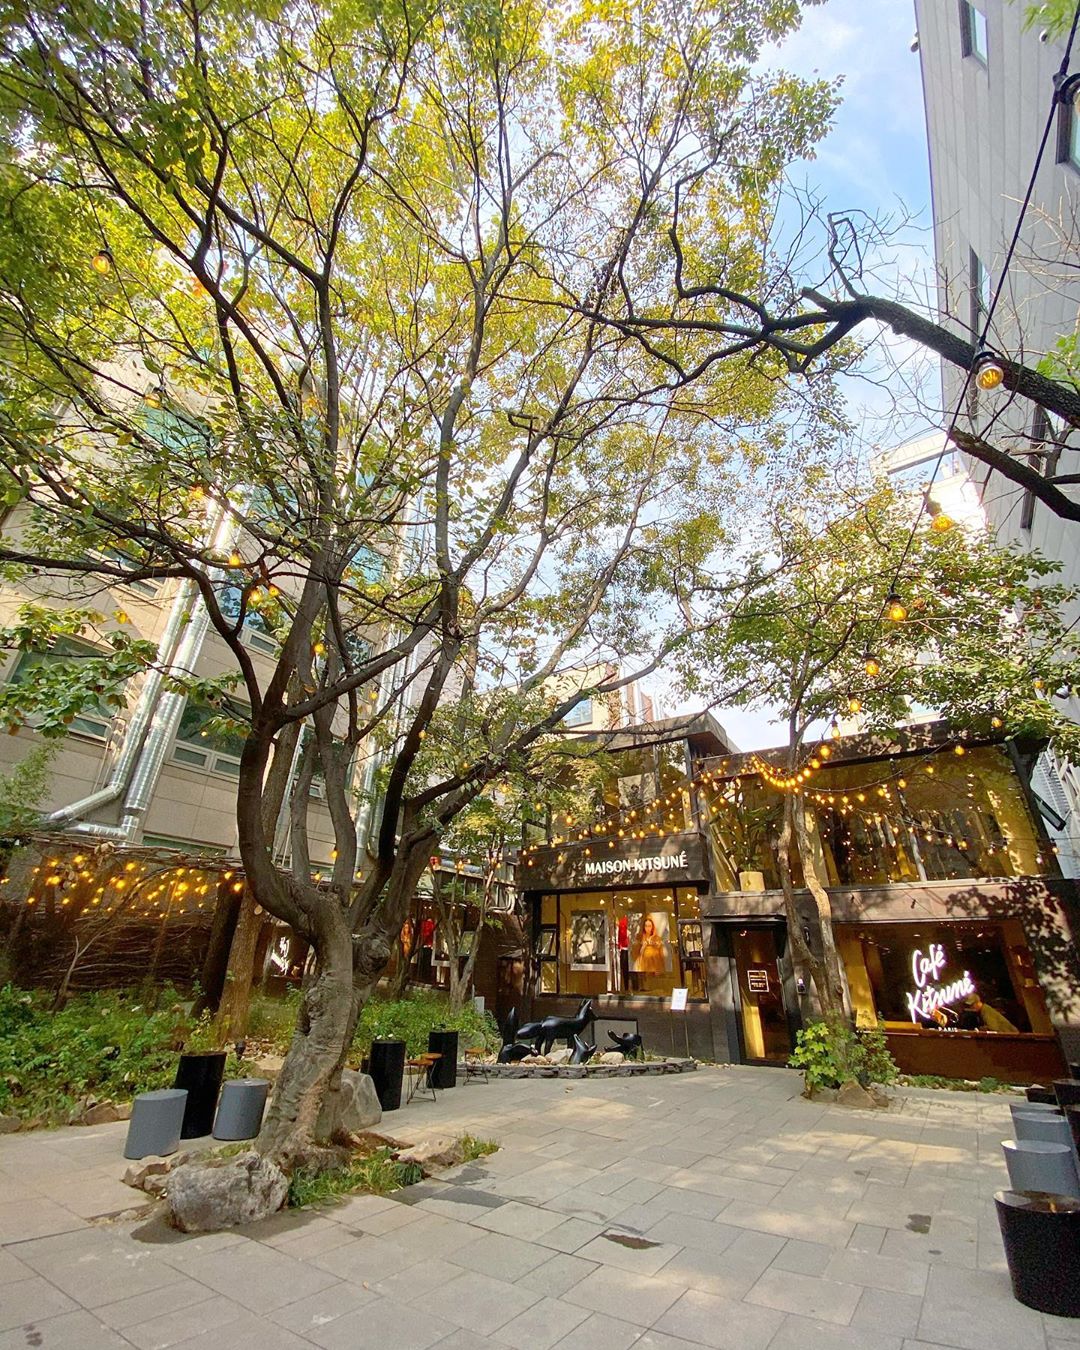 Cafe Kitsuné frontyard